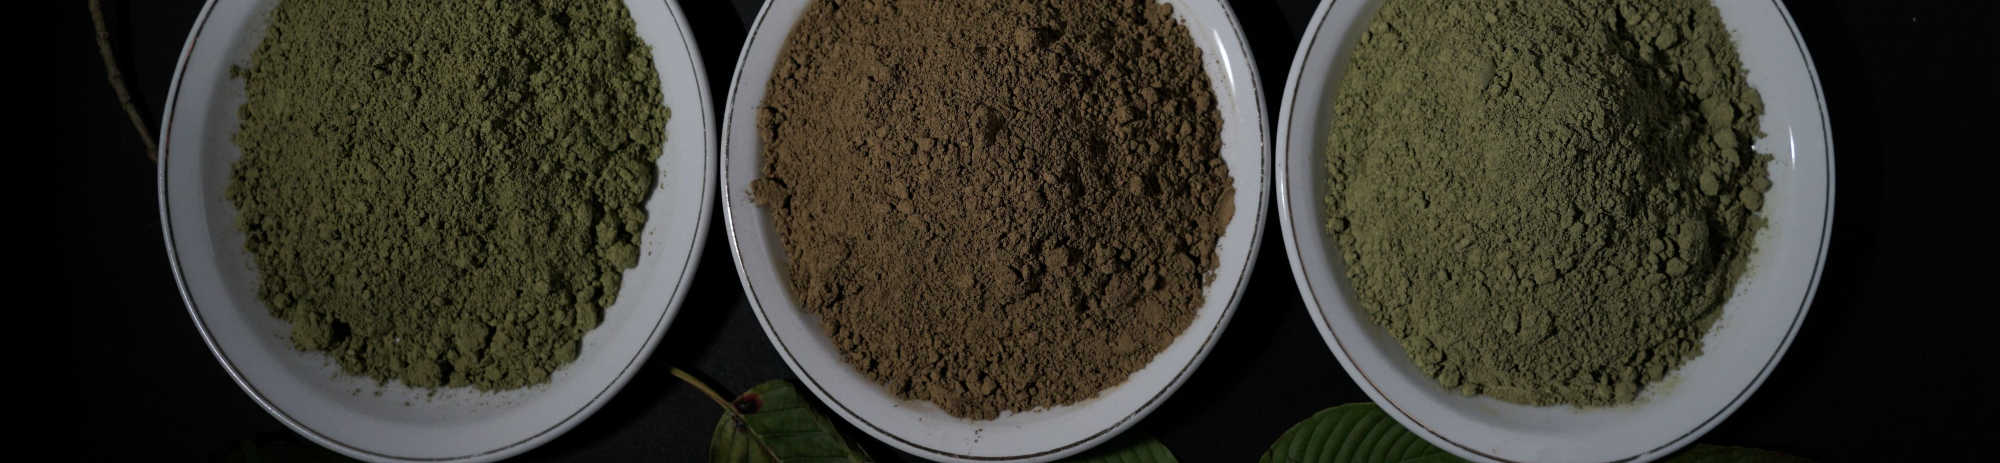 image of kratom powders